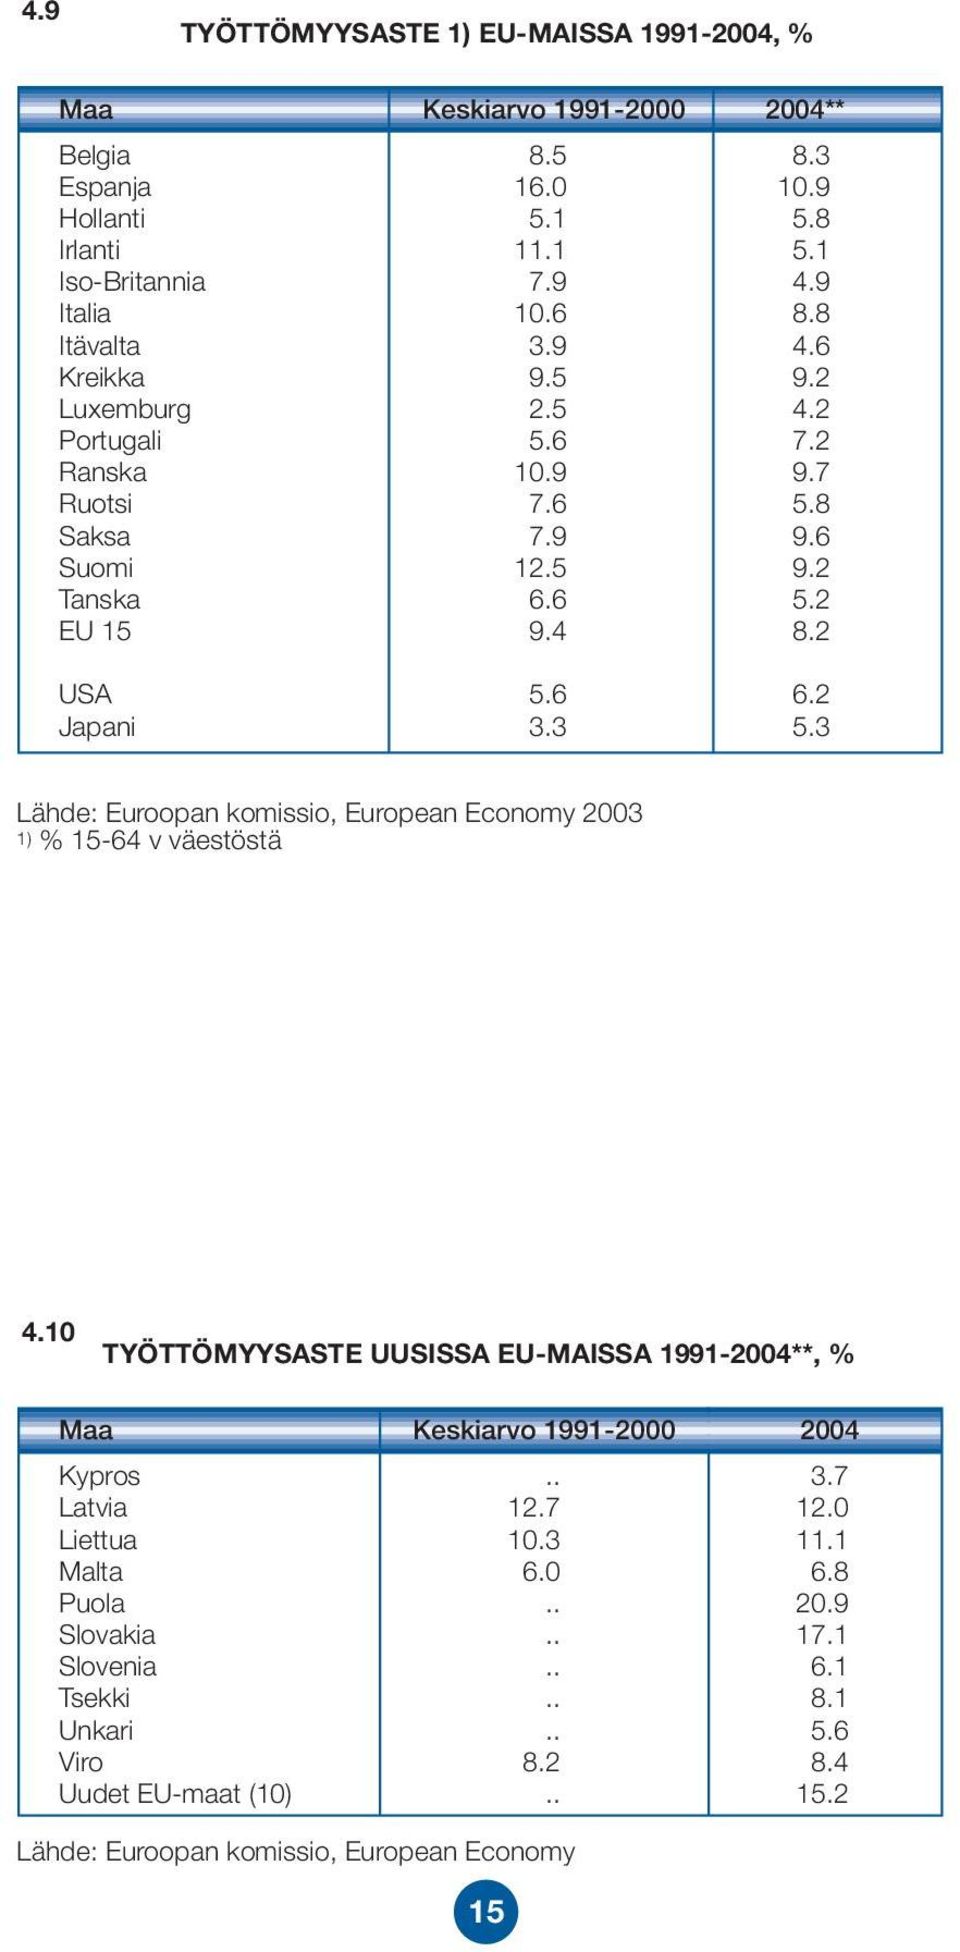 3 5.3 Lähde: Euroopan komissio, European Economy 2003 1) % 15-64 v väestöstä 4.10 TYÖTTÖMYYSASTE UUSISSA EU-MAISSA 1991-2004**, % Maa Keskiarvo 1991-2000 2004 Kypros.. 3.7 Latvia 12.